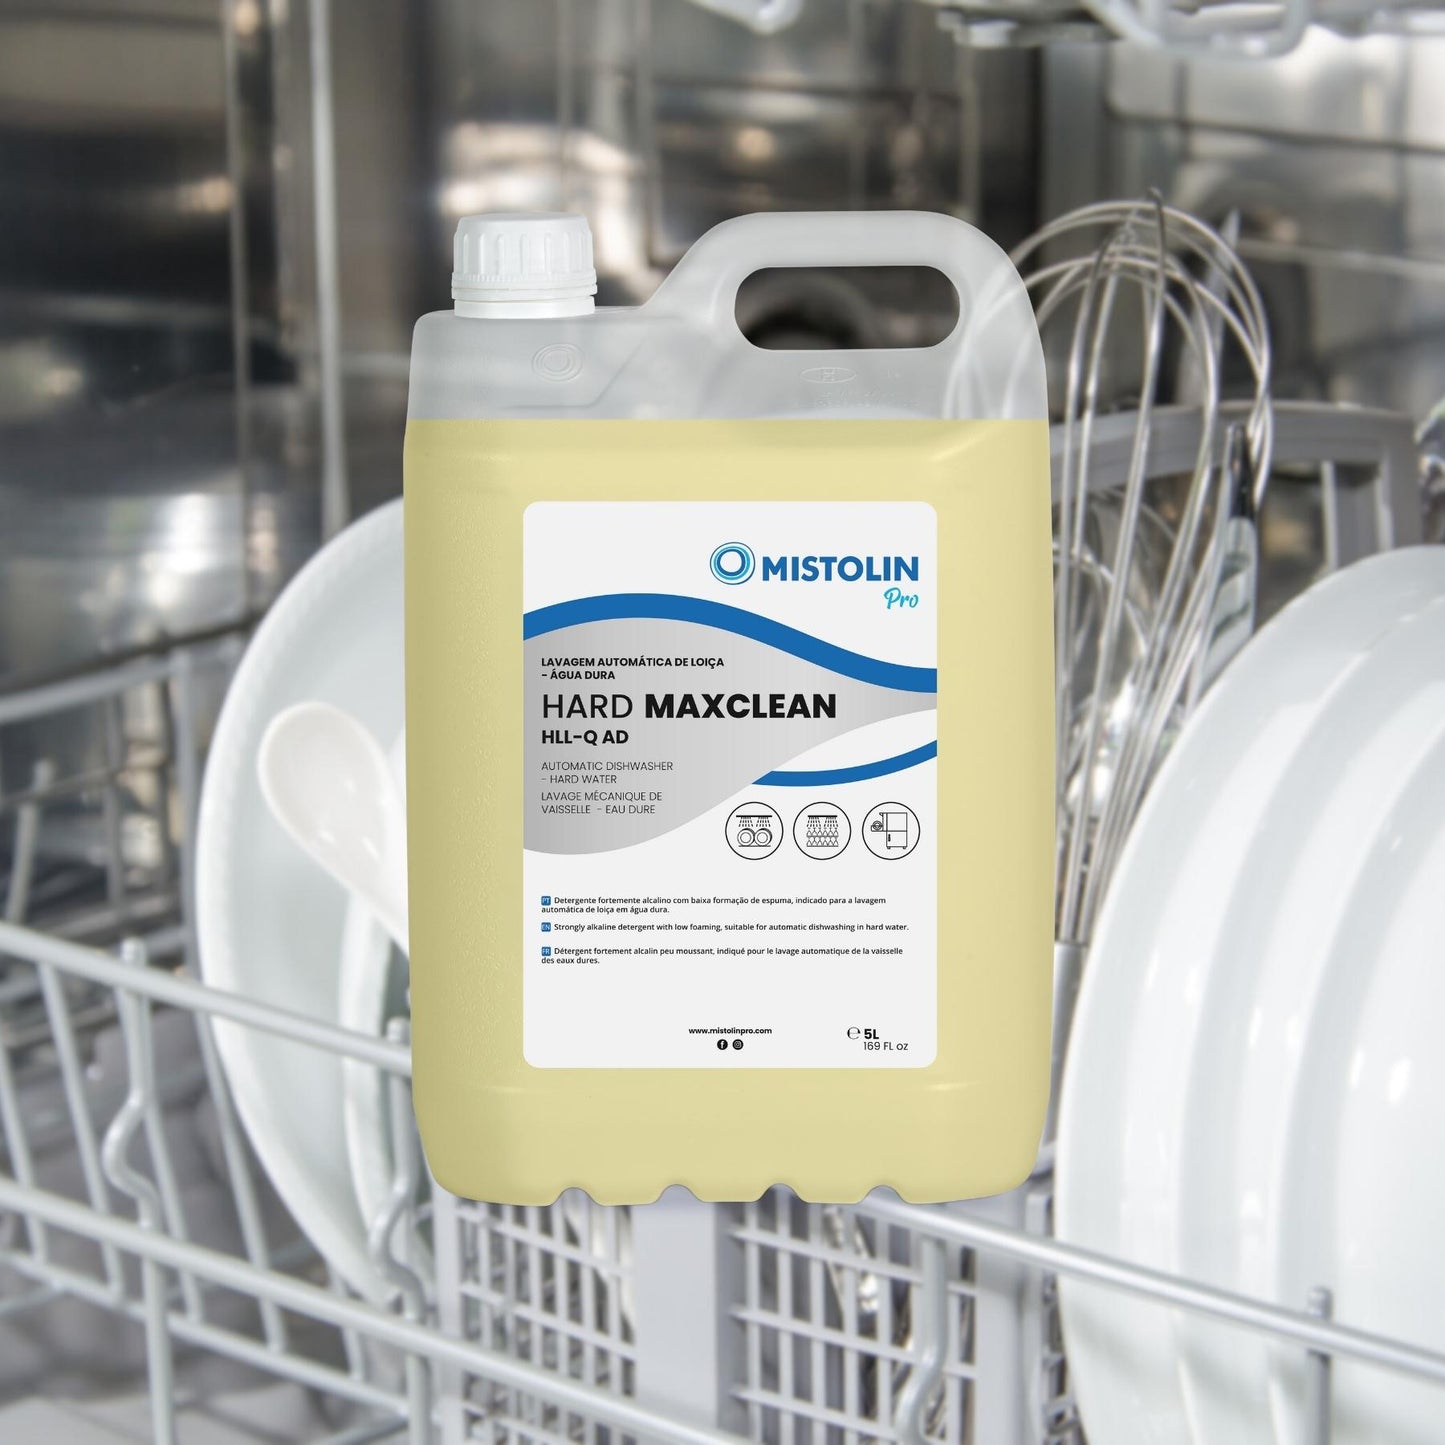 HARD MAXCLEAN HLL-Q AD DET.LAV.MECANICA LOIÇA 5LT, é um detergente fortemente alcalino com baixa formação de espuma, indicado para a lavagem automática de louça em água dura.